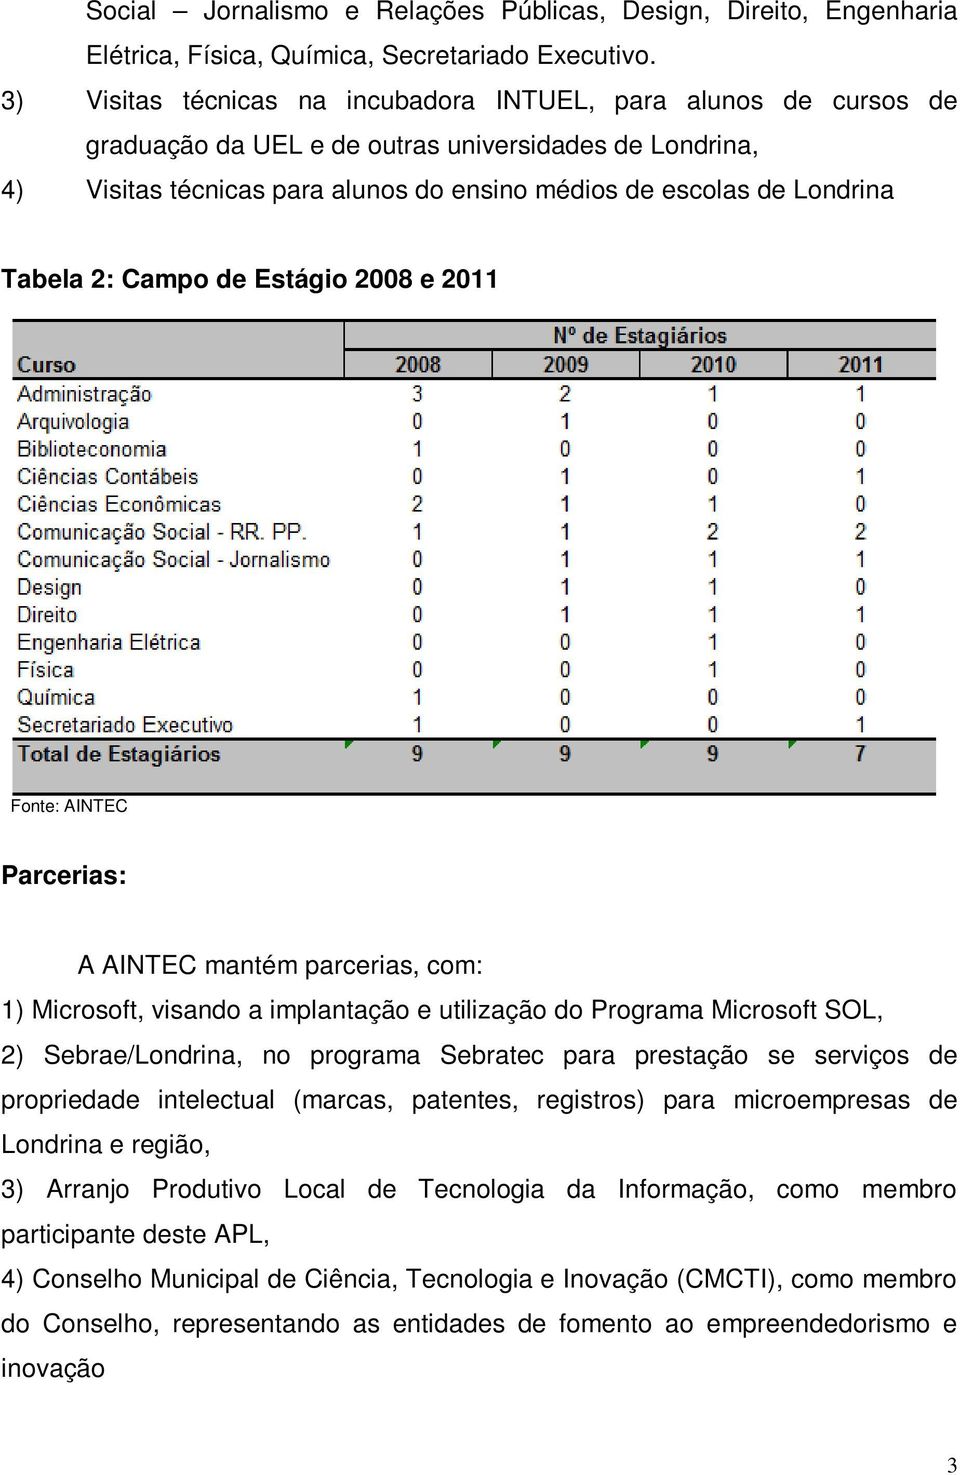 Tabela 2: Campo de Estágio 2008 e 2011 Fonte: Parcerias: A mantém parcerias, com: 1) Microsoft, visando a implantação e utilização do Programa Microsoft SOL, 2) Sebrae/Londrina, no programa Sebratec